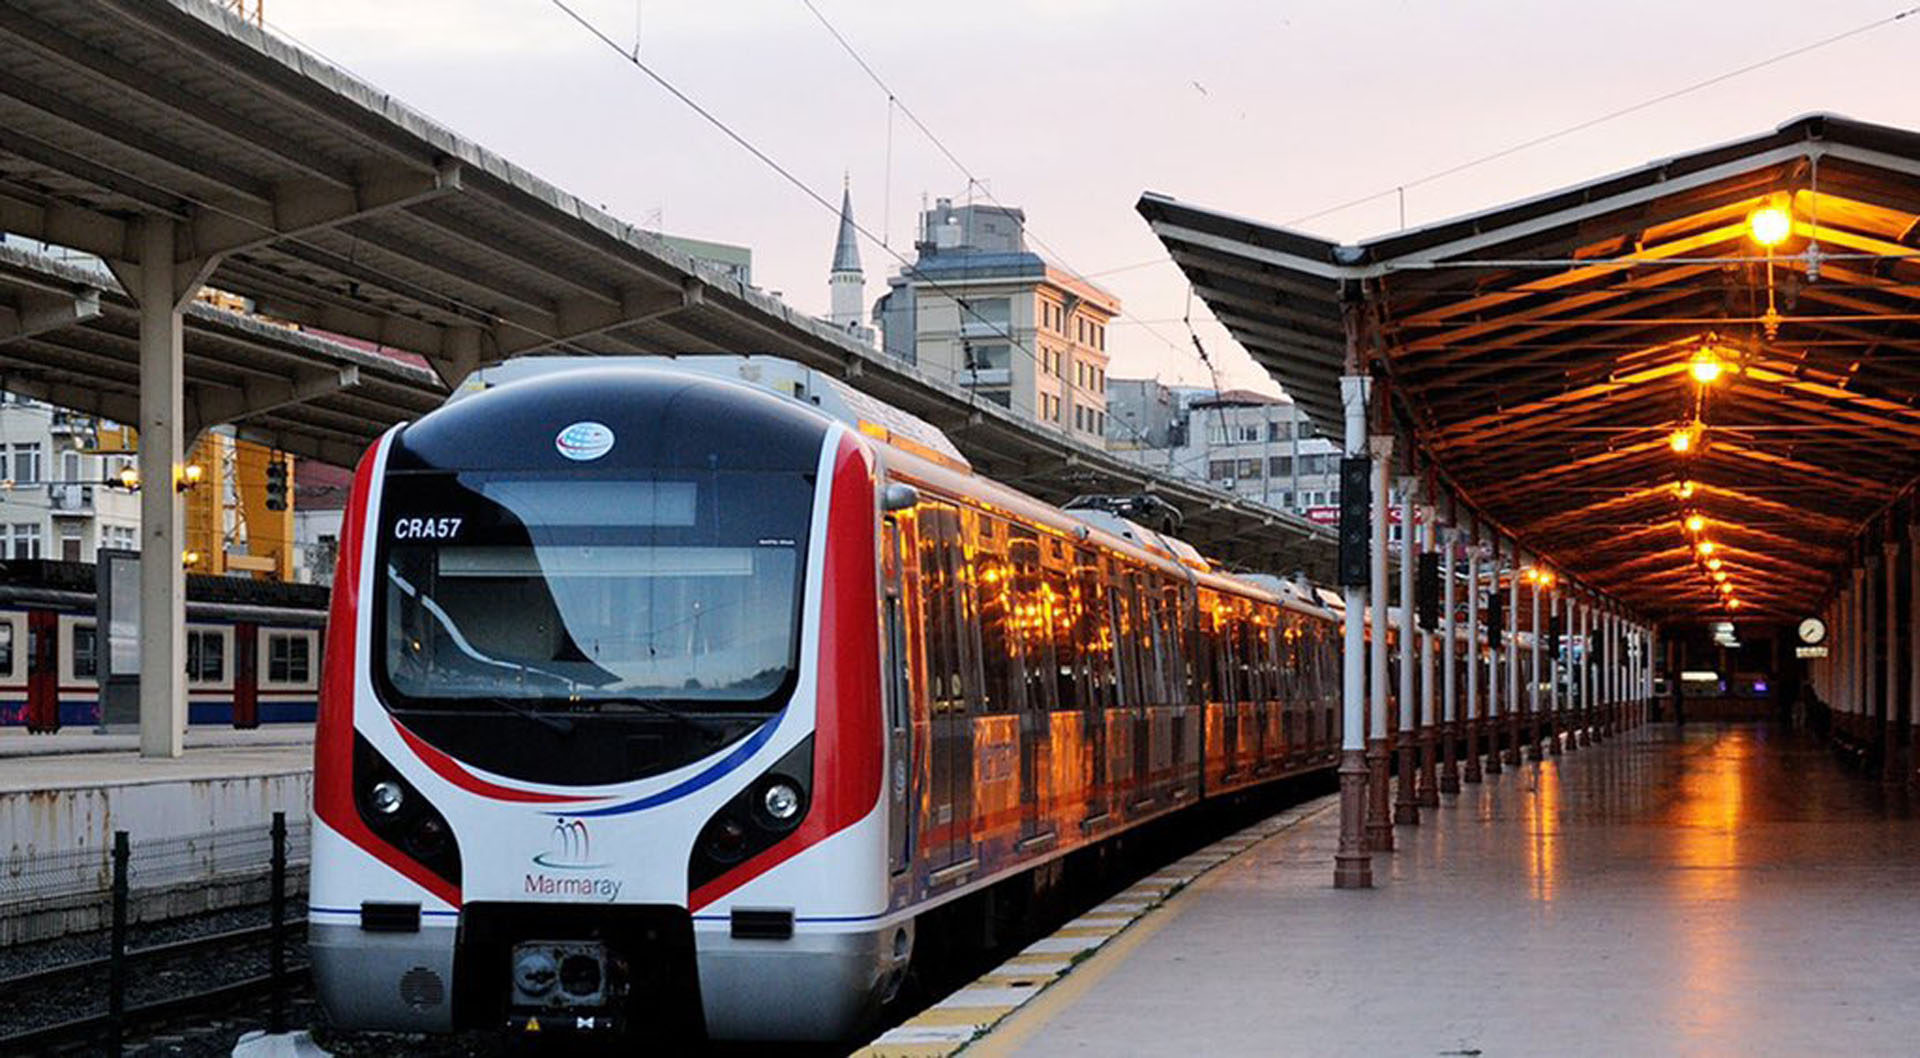 19 Mayıs belediye otobüsleri ücretsiz mi 2022? 19 Mayıs metro, İETT, tramvay, Marmaray bedava mı? Toplu ulaşım ücretsiz mi olacak Ankara, İstanbul, İzmir?